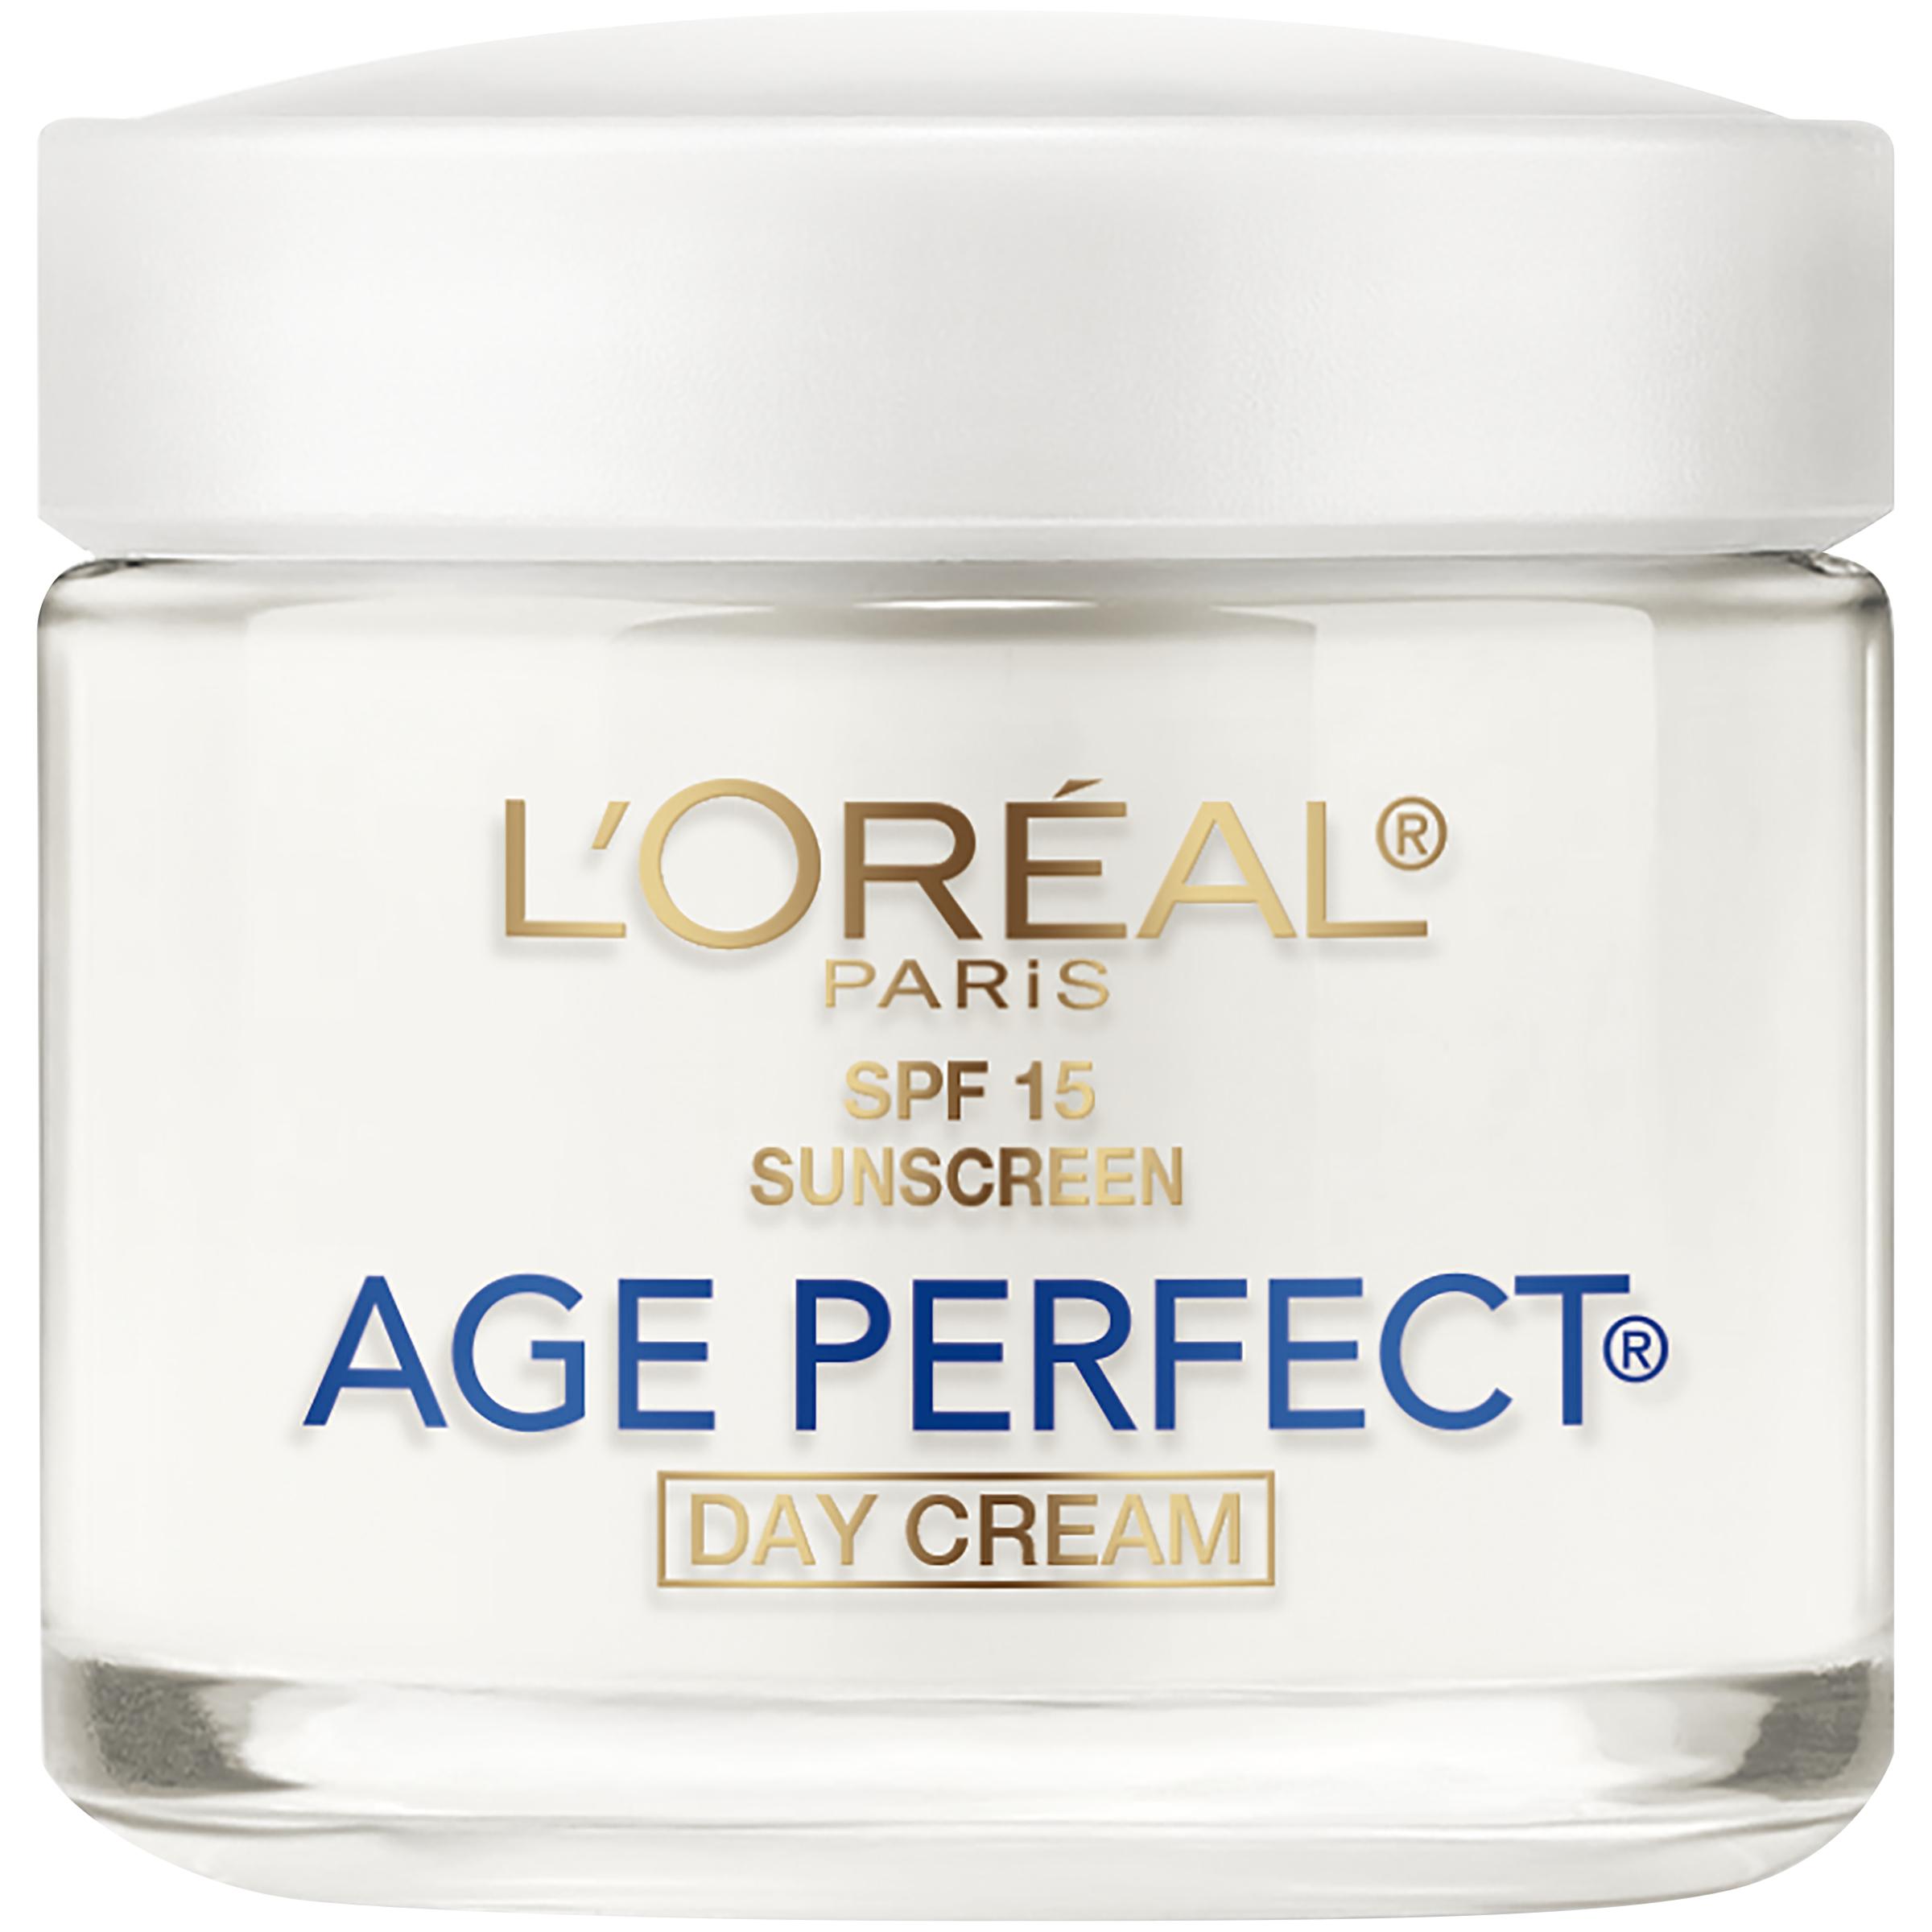 Age Perfect Day Cream for Mature Skin SPF 15